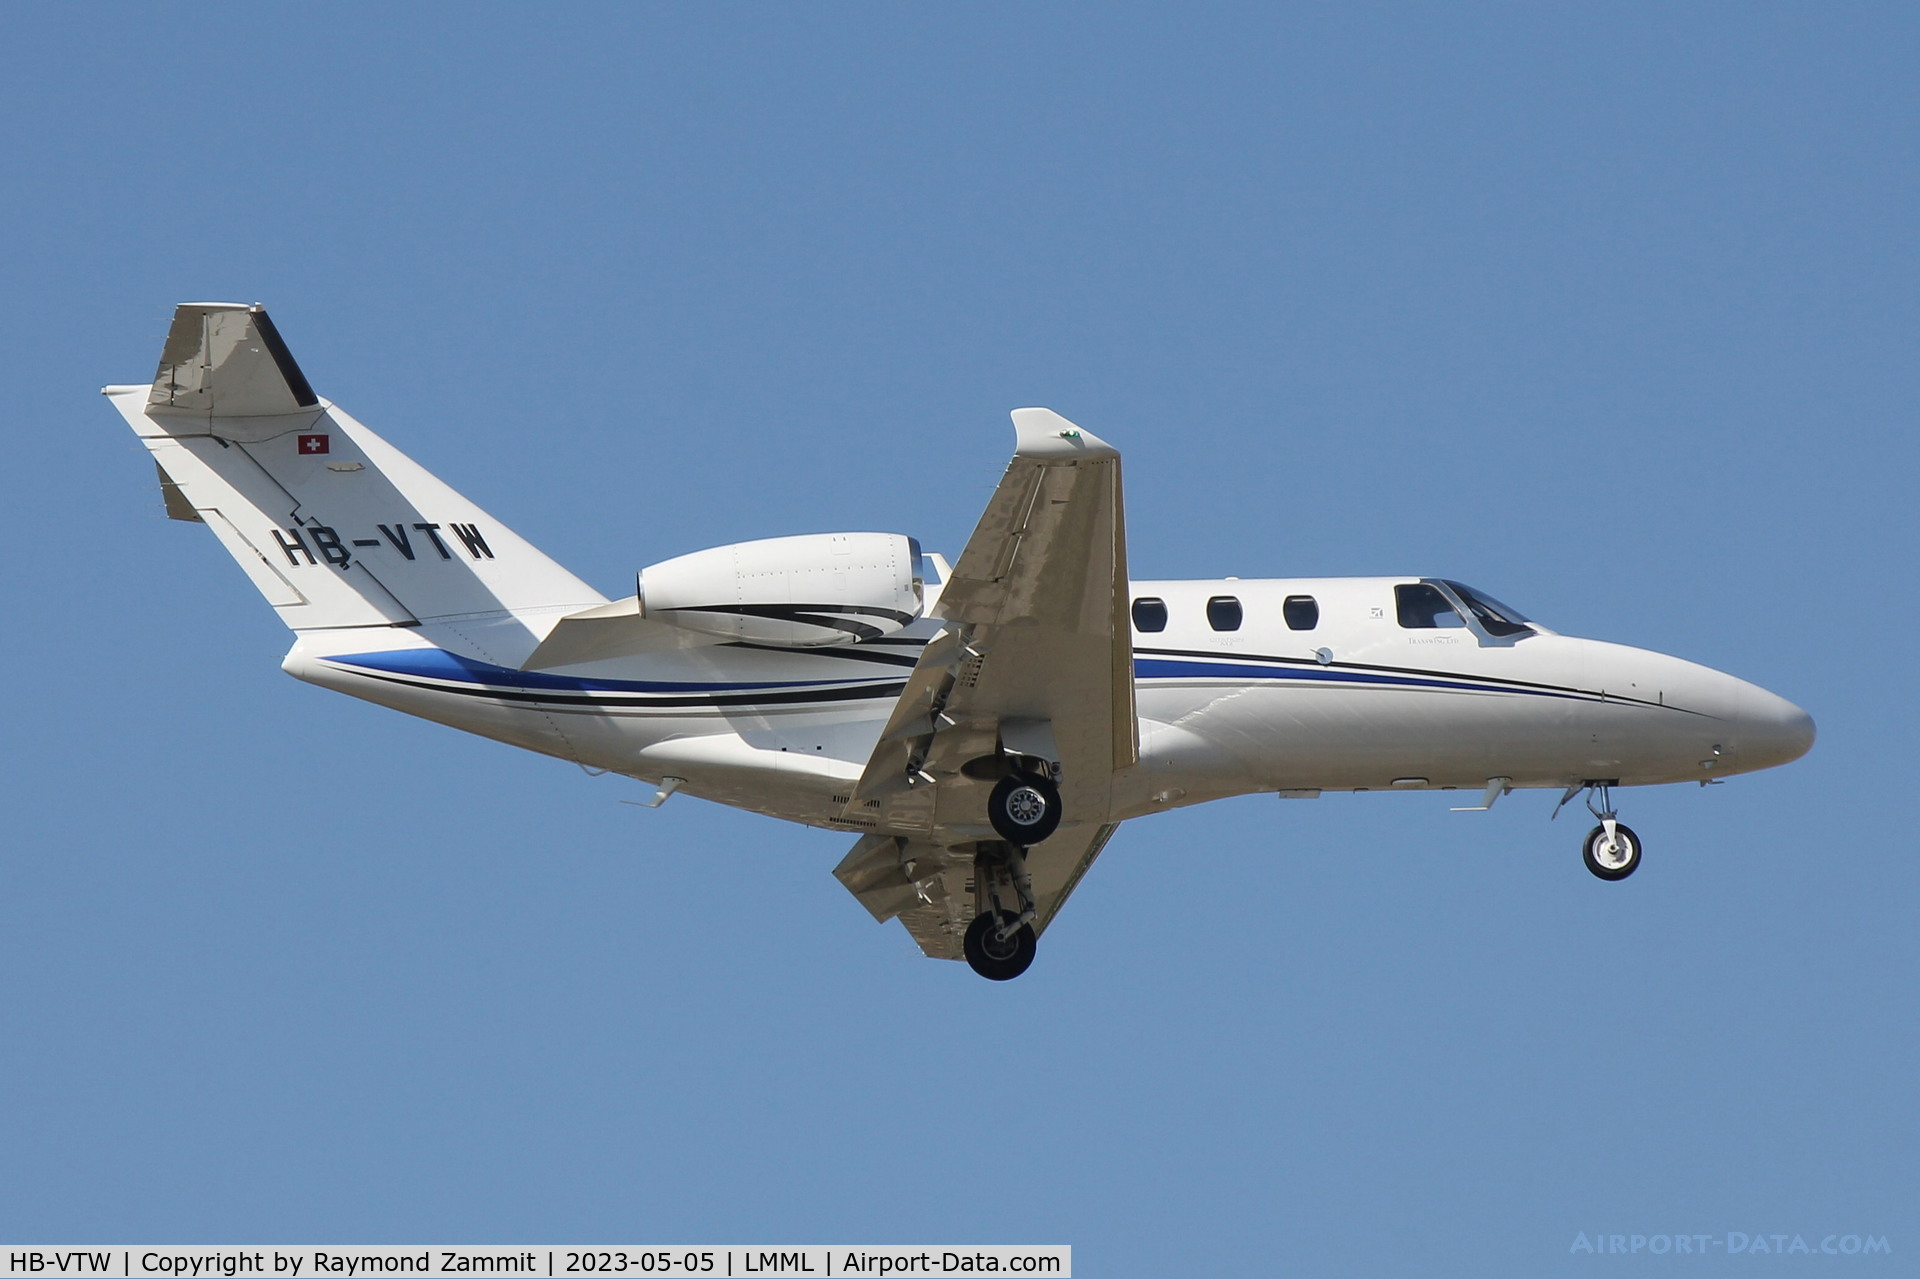 HB-VTW, 2019 Cessna 525 Citation M2 C/N 525-1044, Cessna 525 Citation M2 HB-VTW Alpine Jets